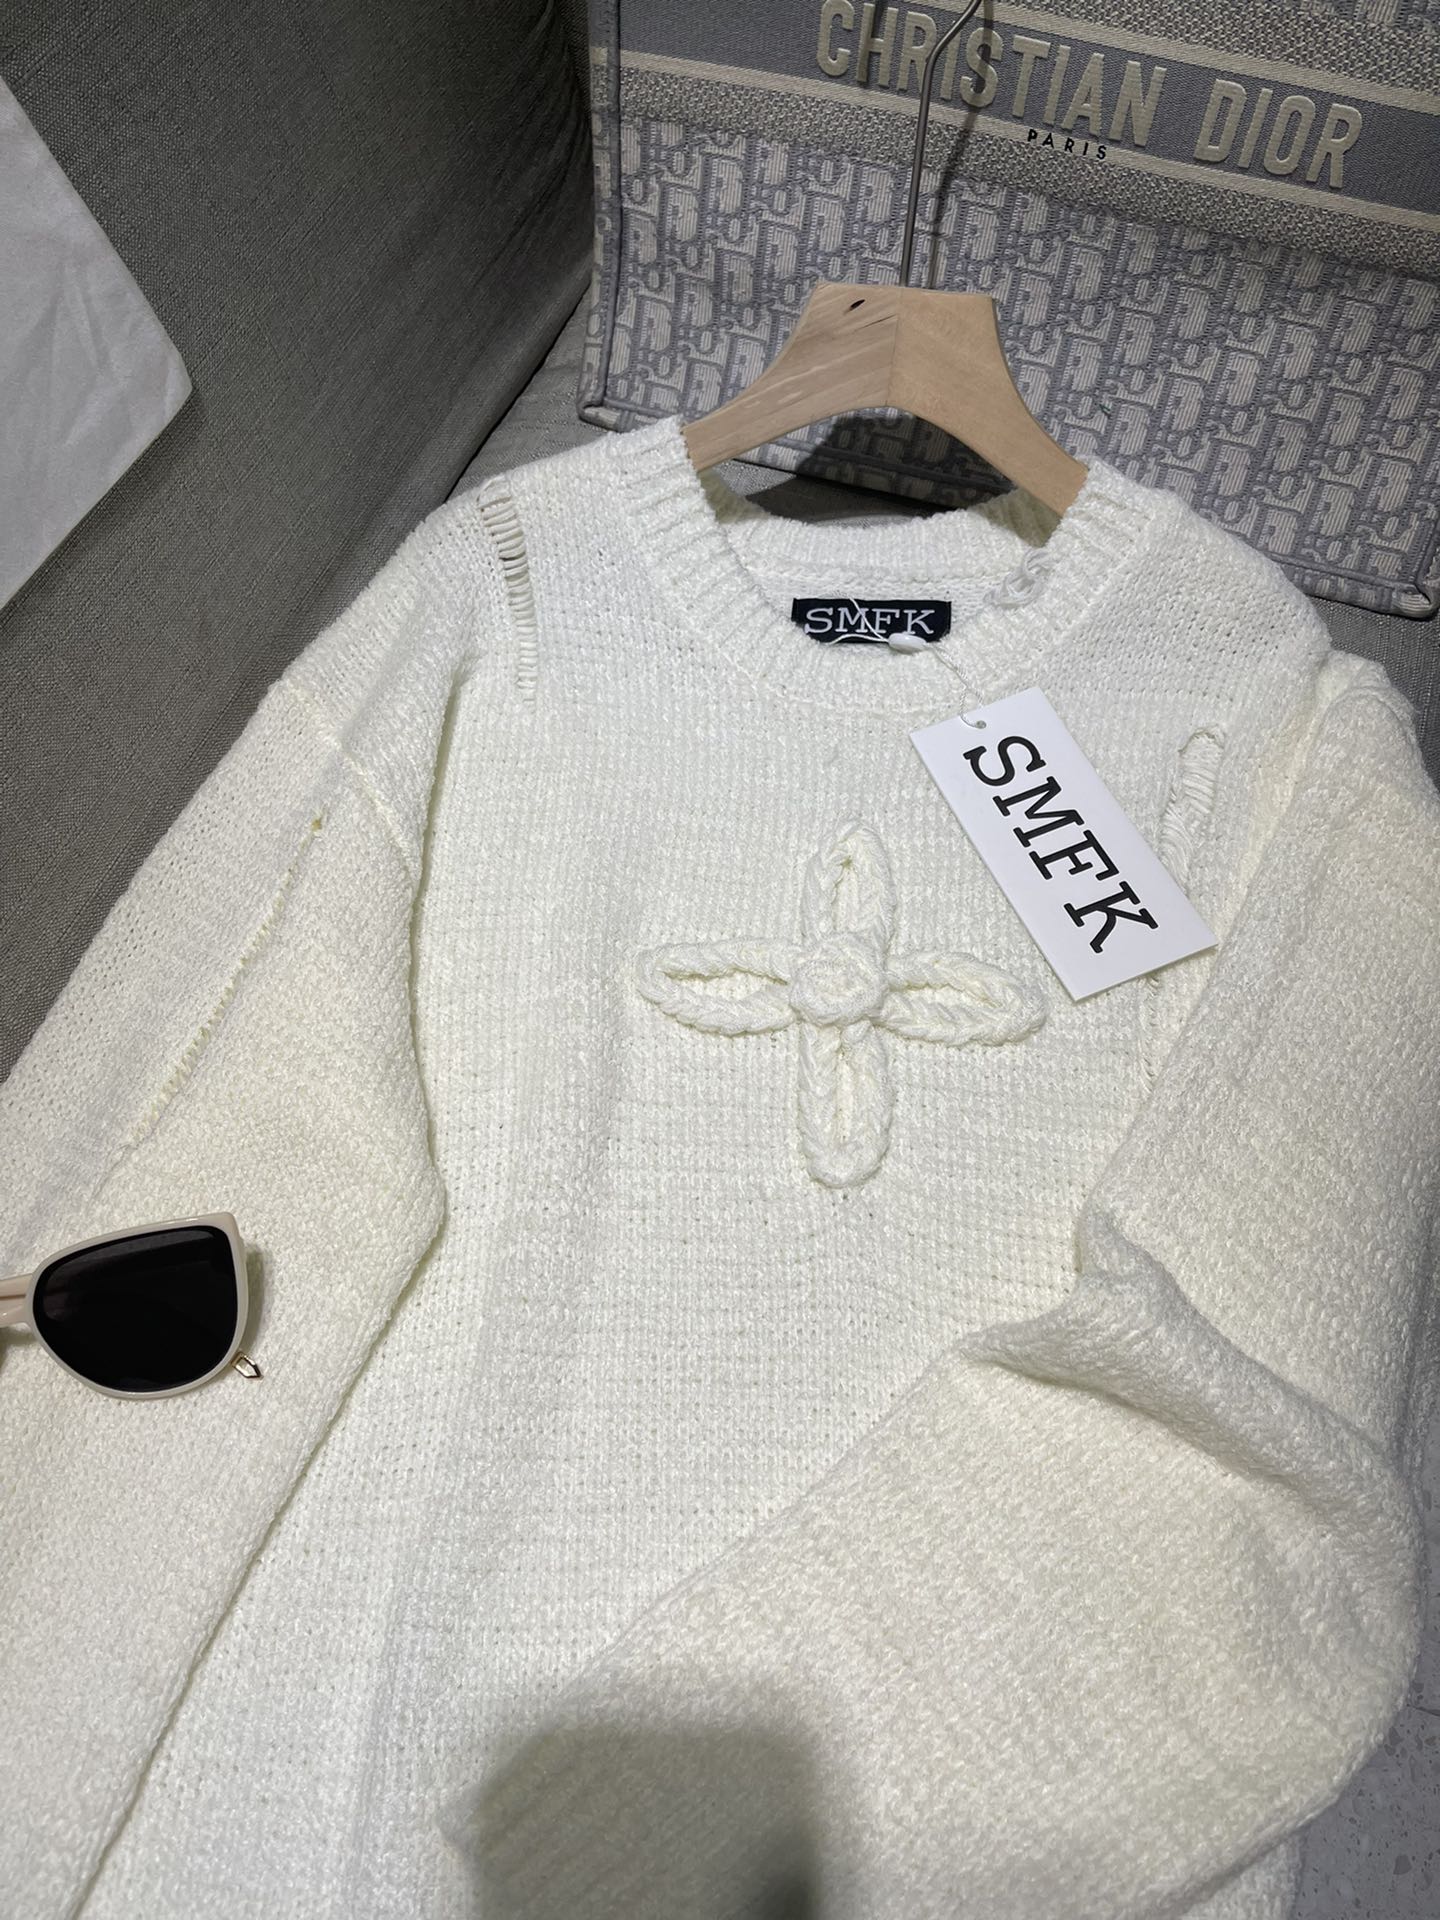 シンプル印象になってSMFKセーター素材偽物 長袖トップス ニット シンプル 暖かい ゆったり ホワイト_2